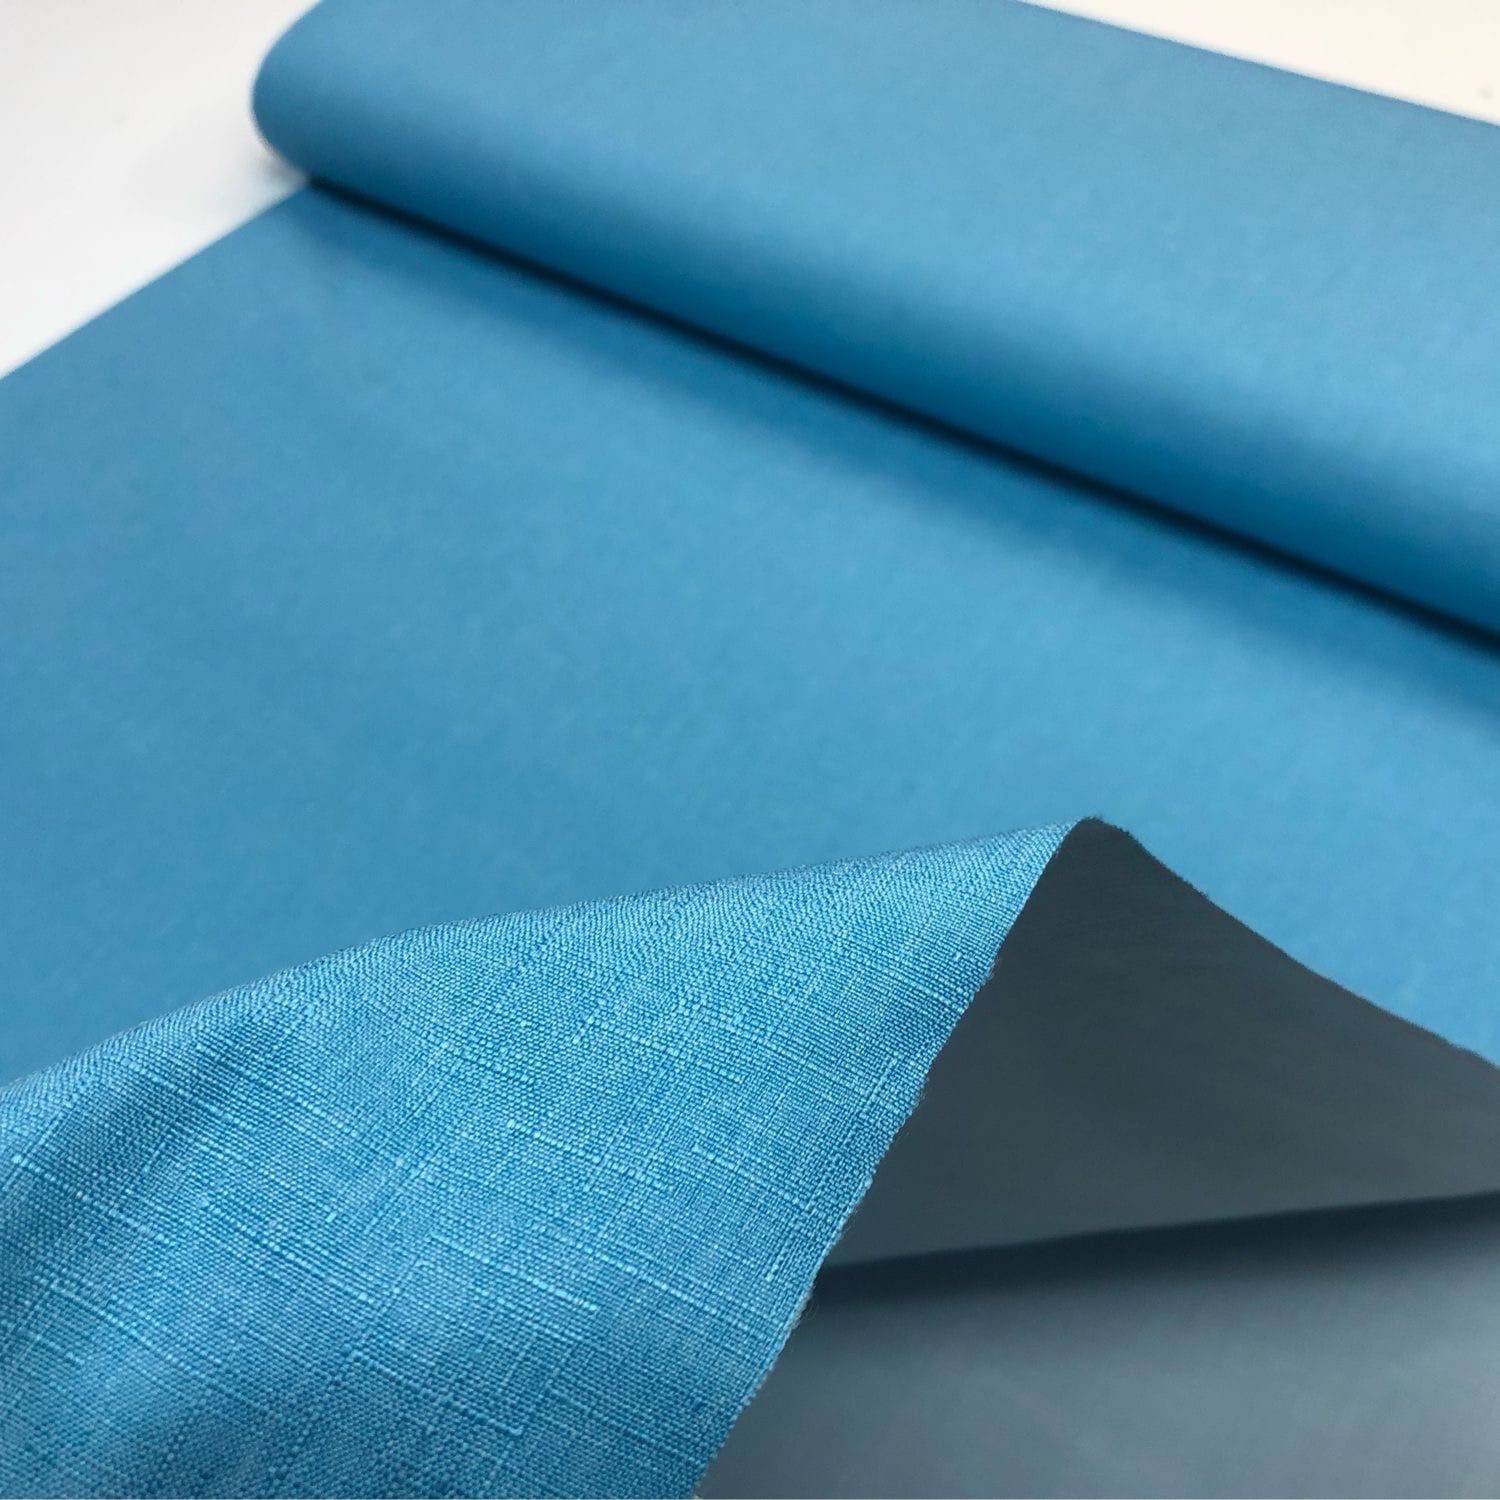 Мембранная ткань — вид многослойной ткани, с водоотталкивающими или ветрозащитными свойствами